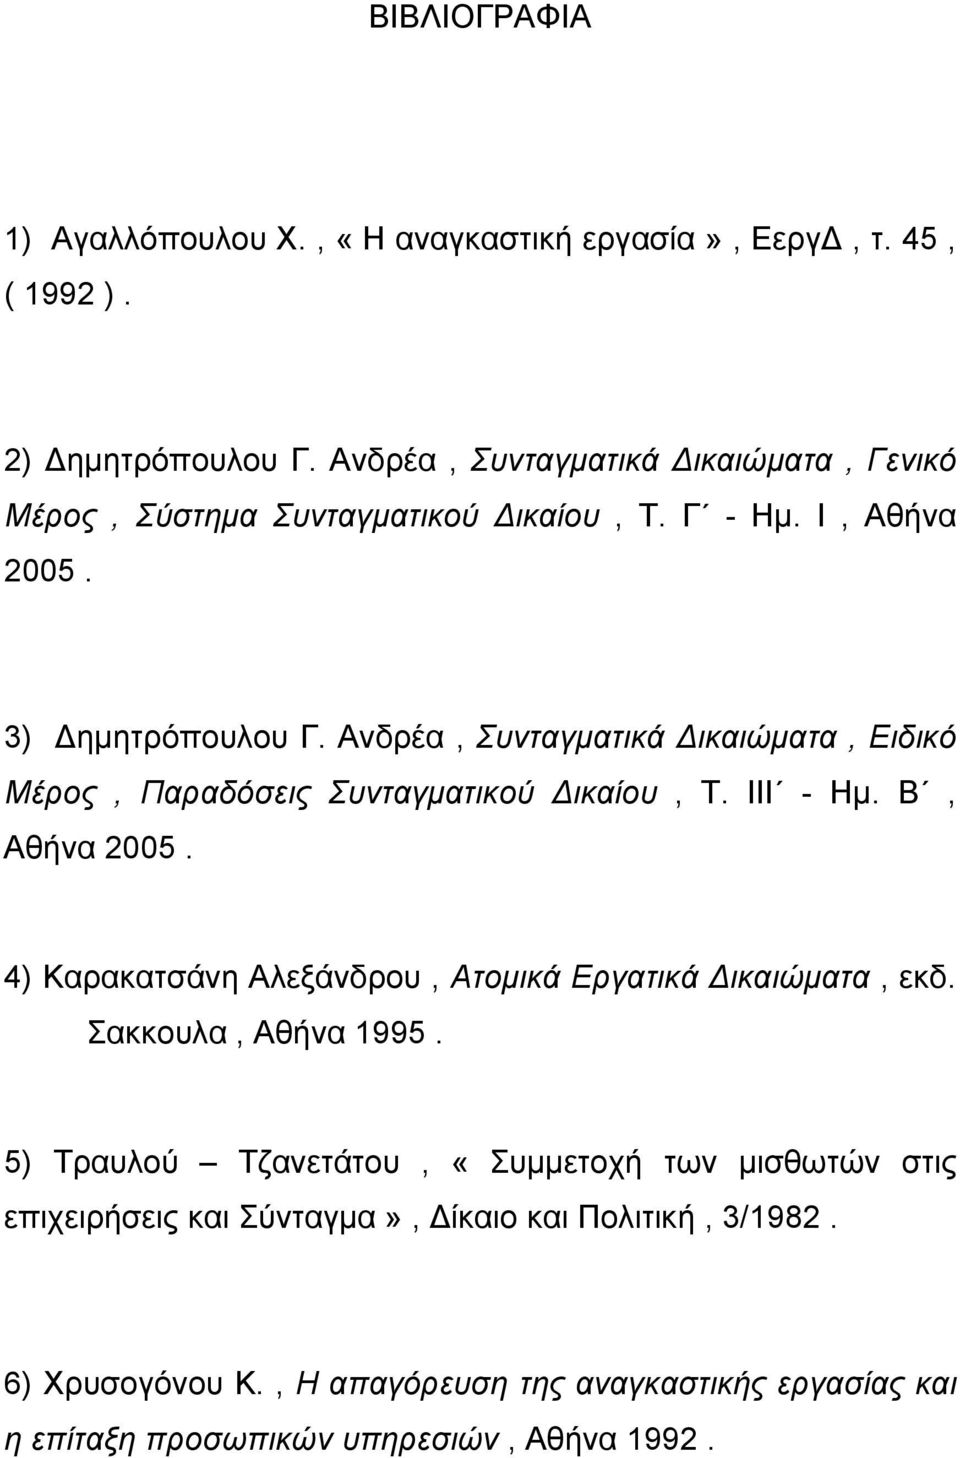 Ανδρέα, Συνταγματικά Δικαιώματα, Ειδικό Μέρος, Παραδόσεις Συνταγματικού Δικαίου, Τ. ΙΙΙ - Ημ. Β, Αθήνα 2005.